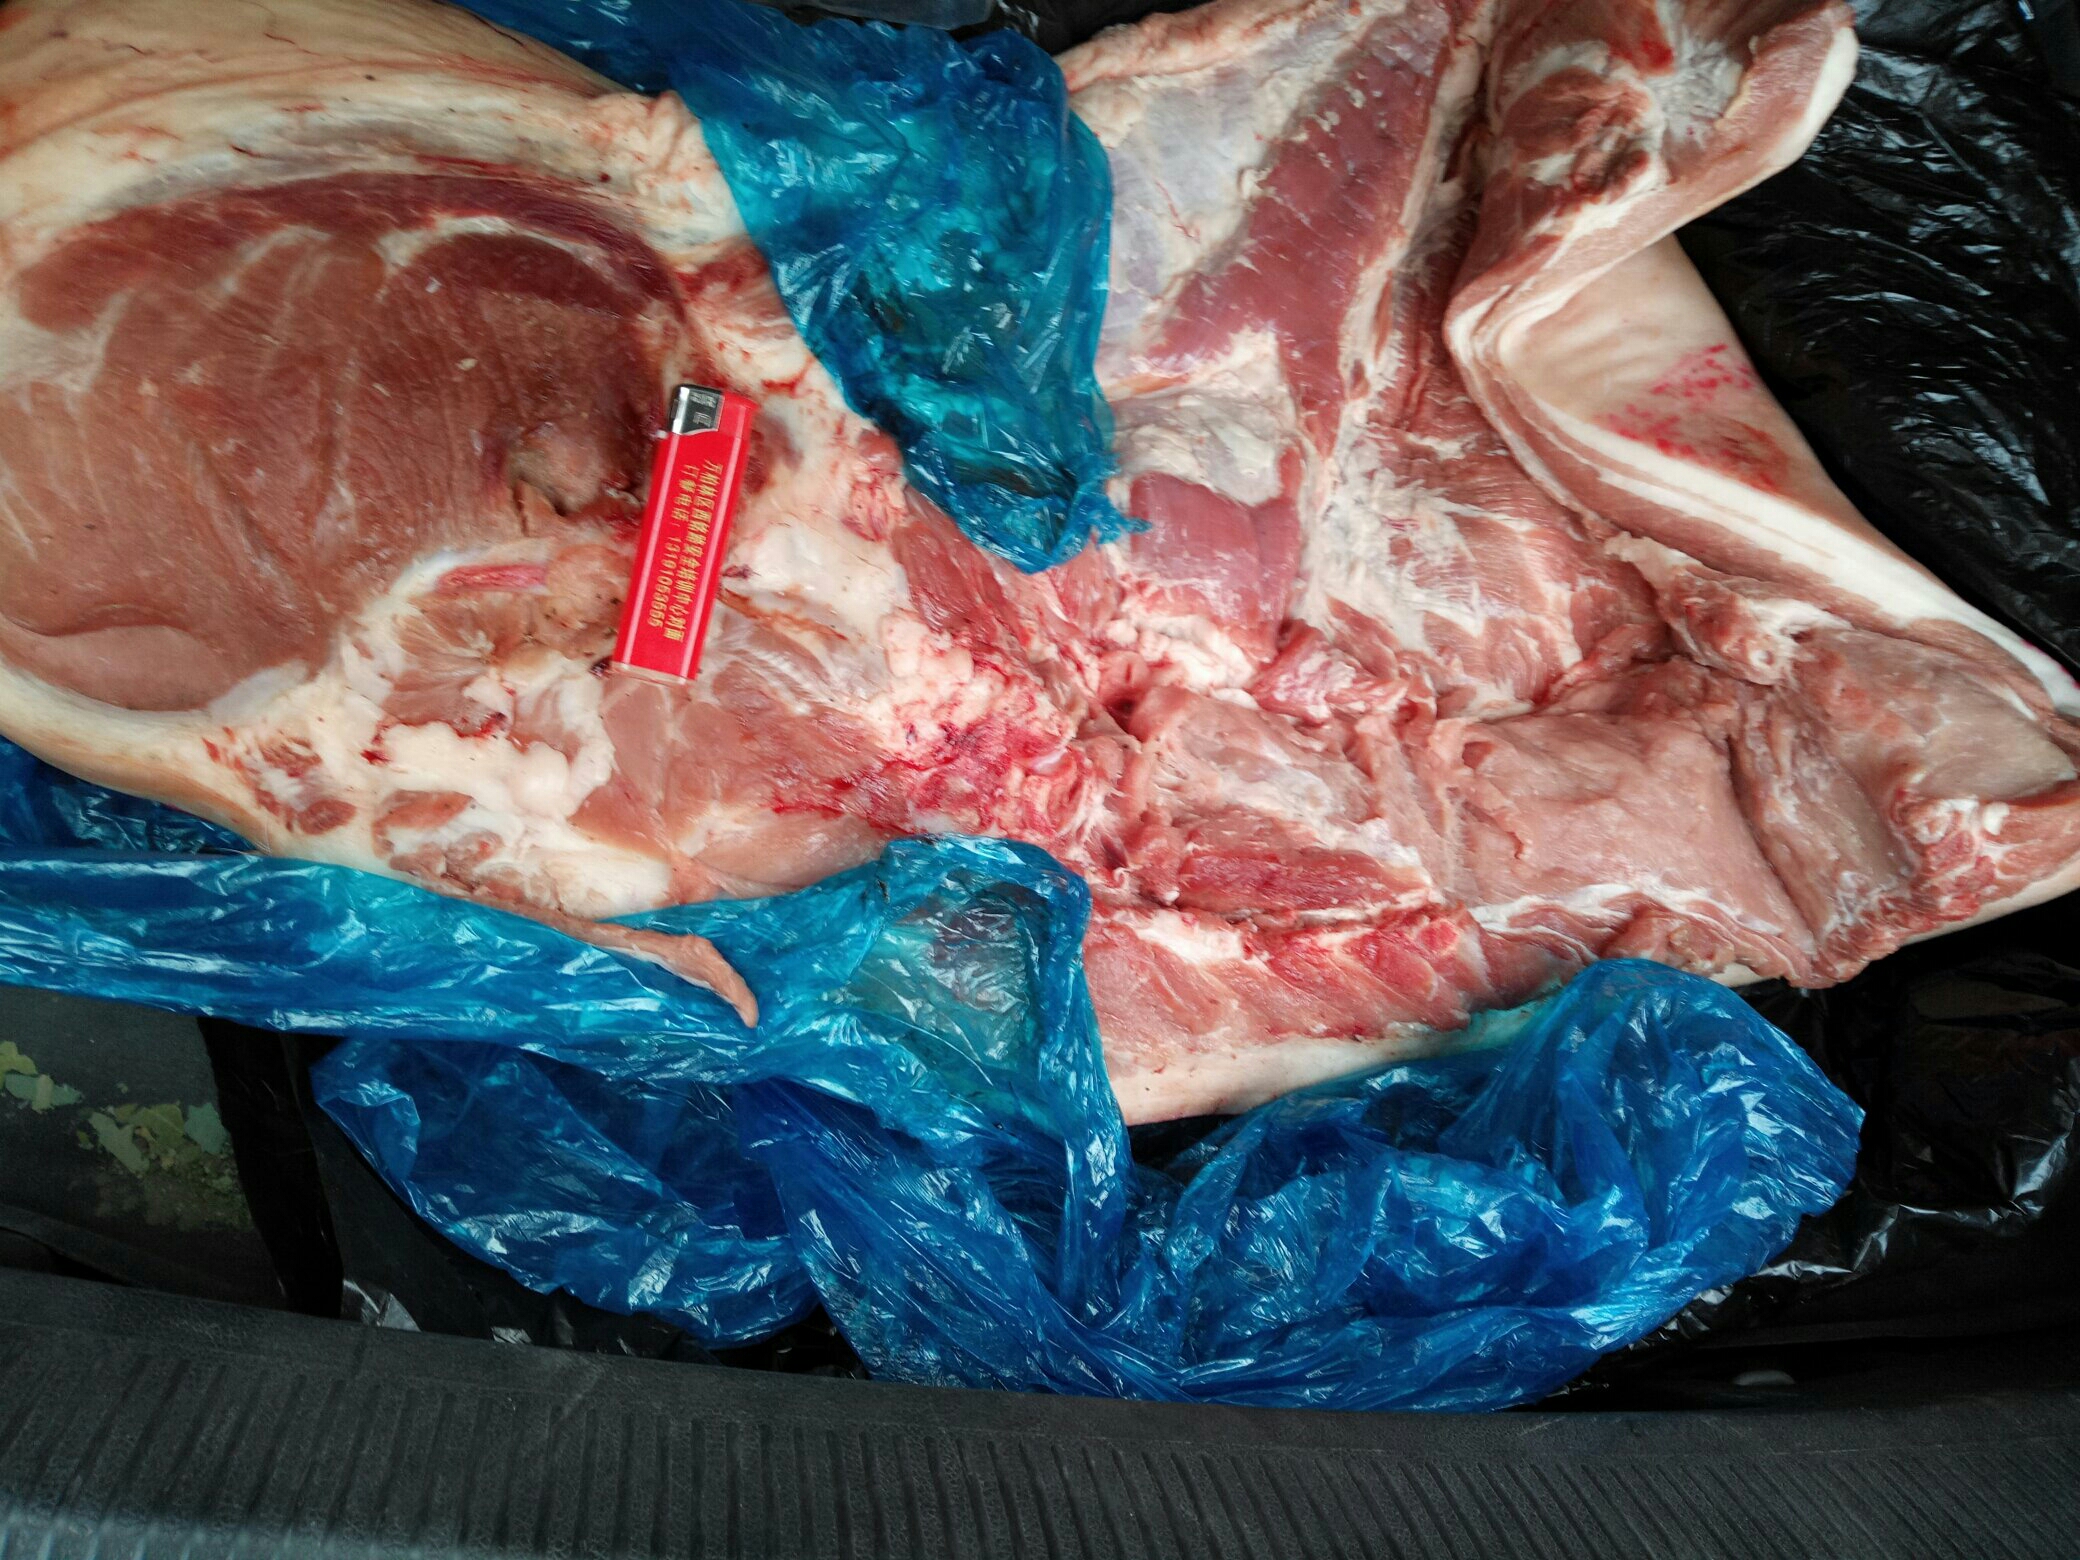              今天直接弄50斤猪肉